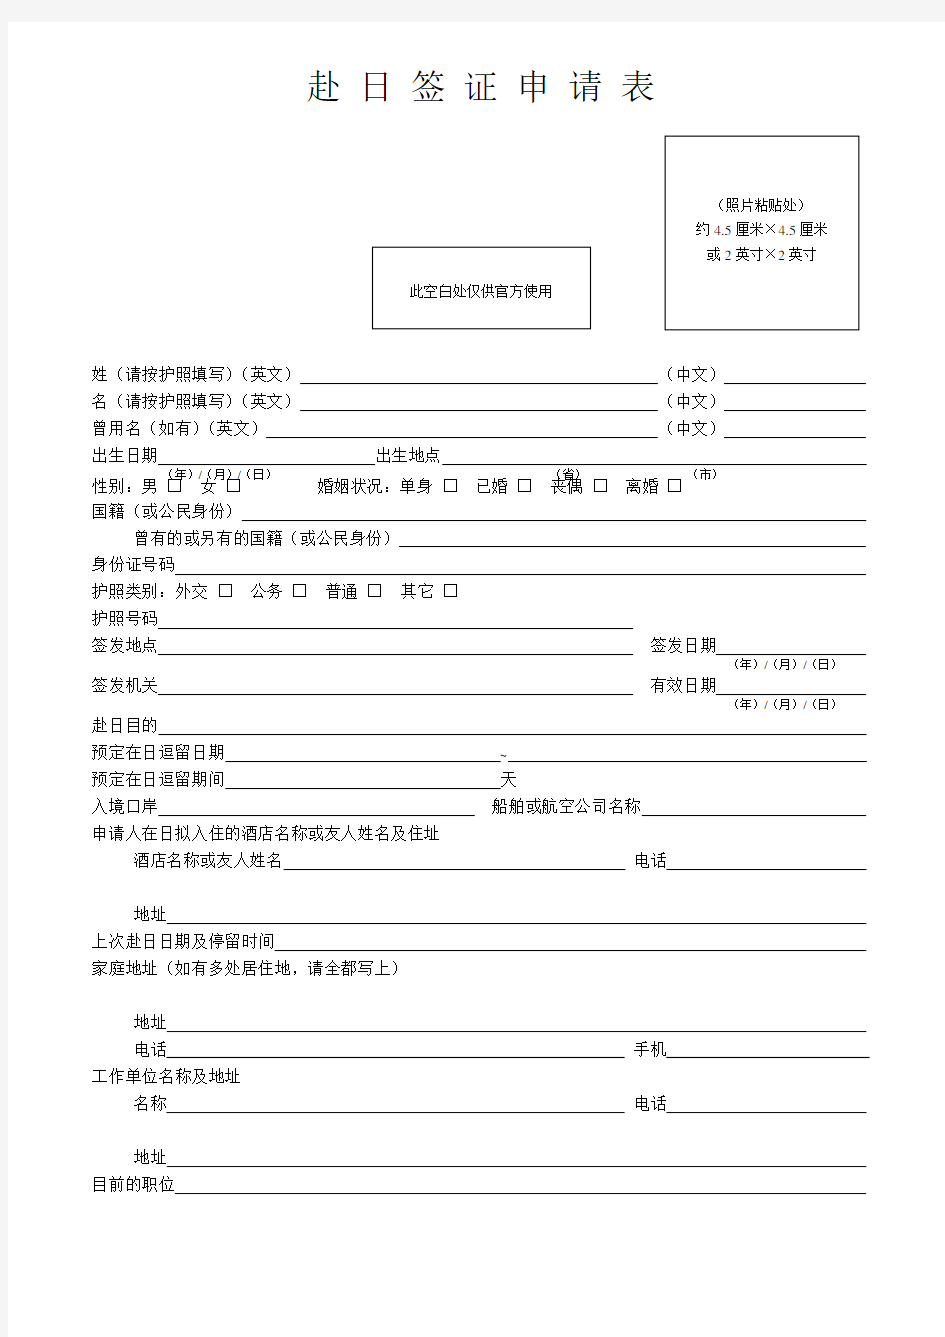 日本签证申请表(新)-打印即可